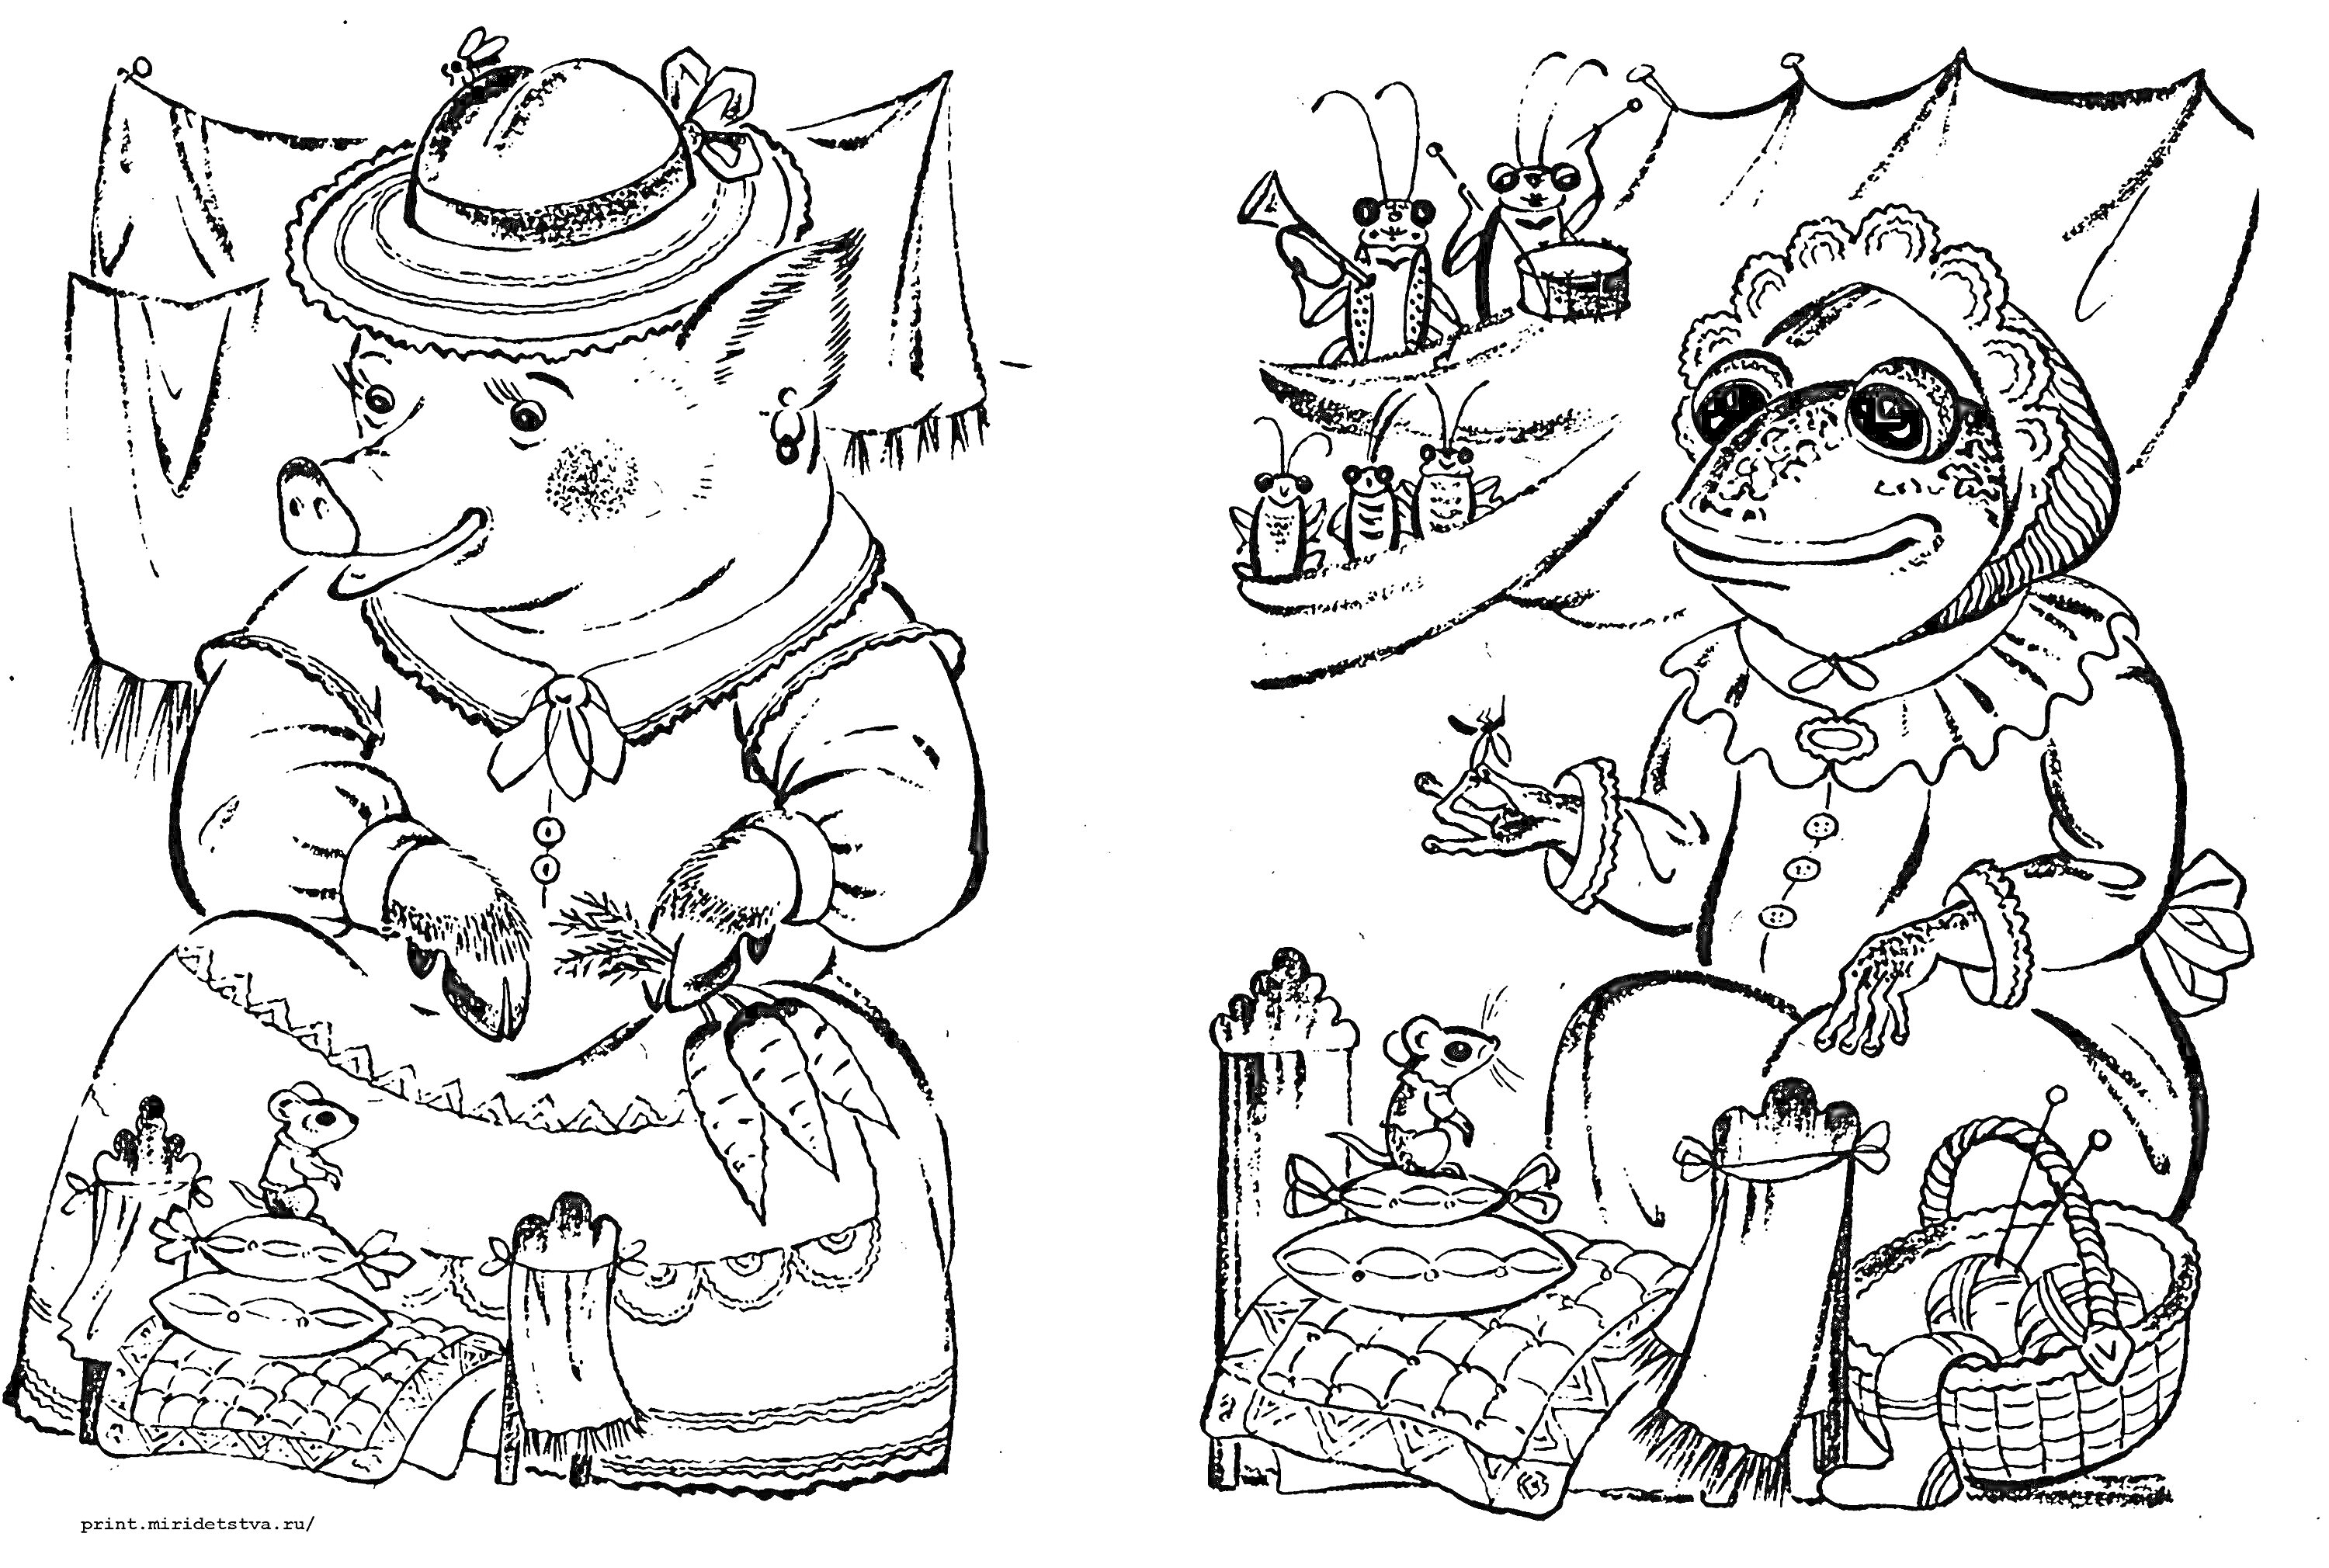 Раскраска Поросёнок и лягушка за столом с мышонком, задний план - вешалка с бельём и фотографии